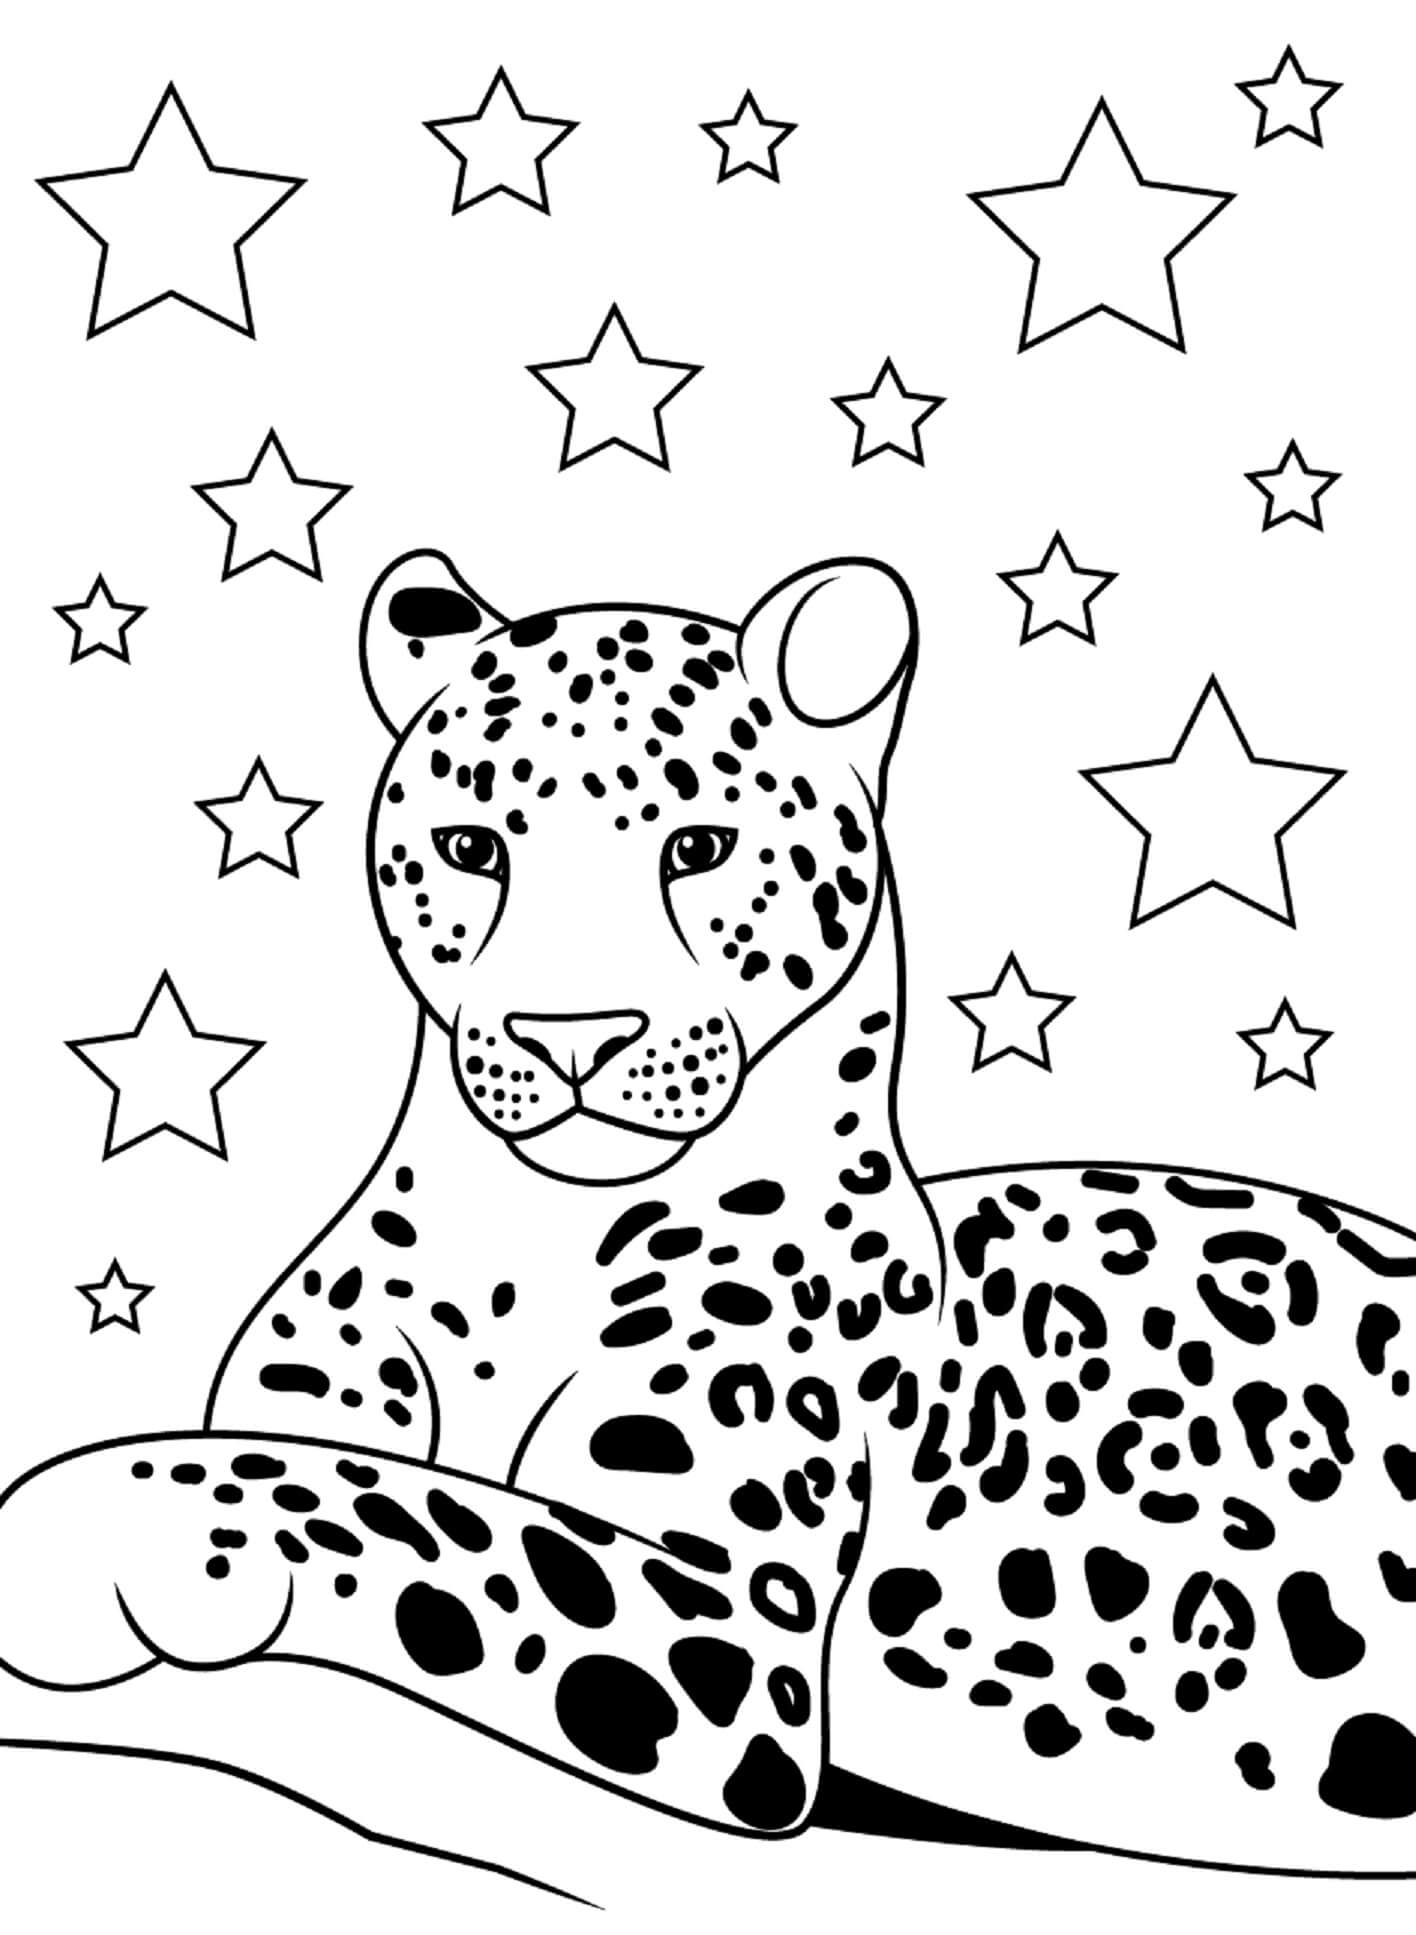 Jaguar Com Estrelas para colorir